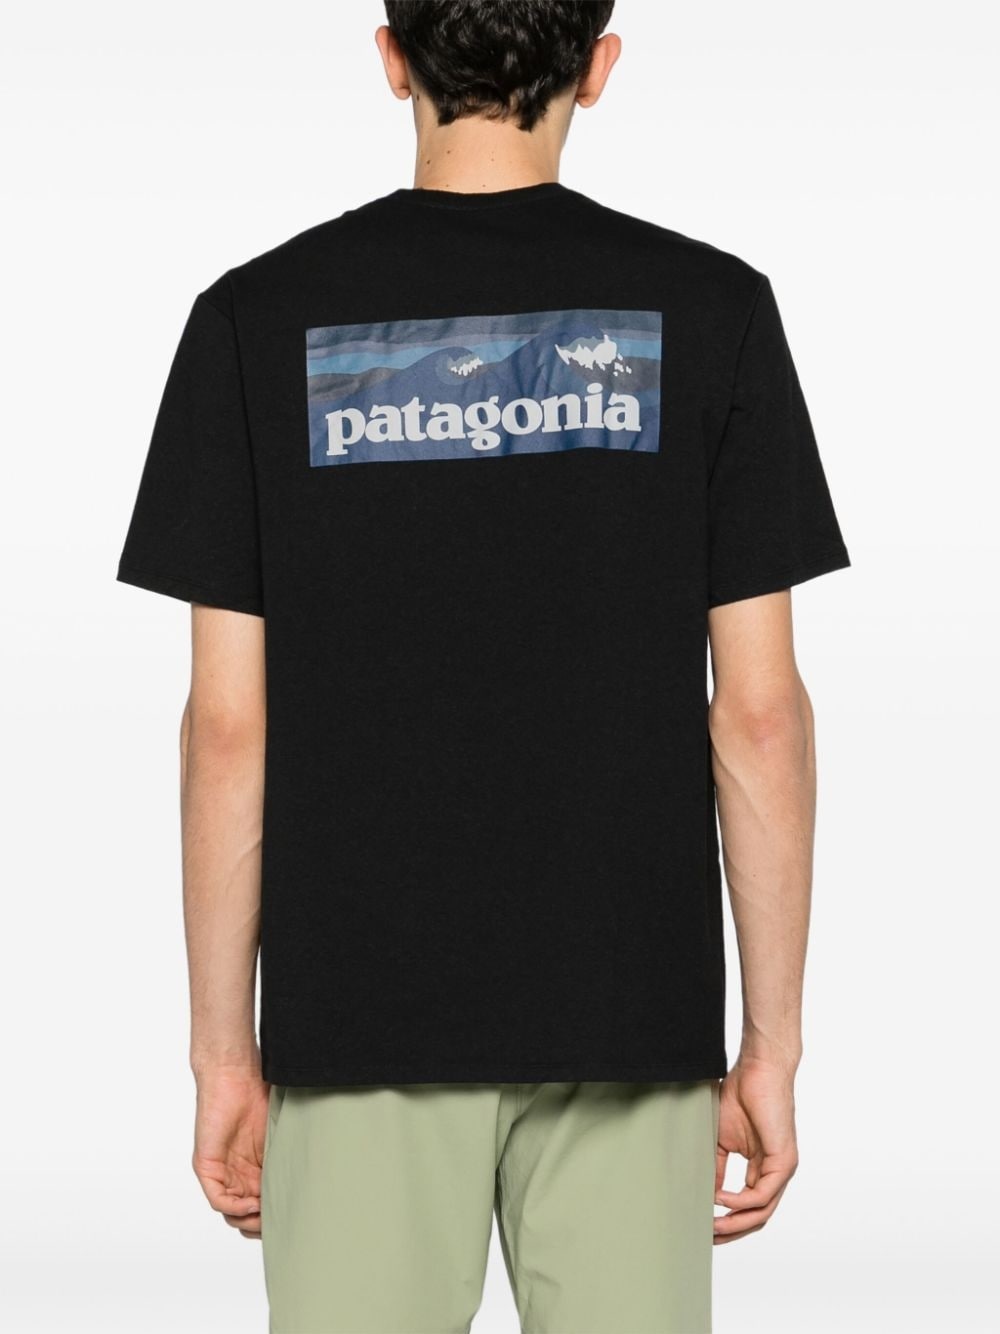 Patagonia T-shirt Pattern Uomo - 5